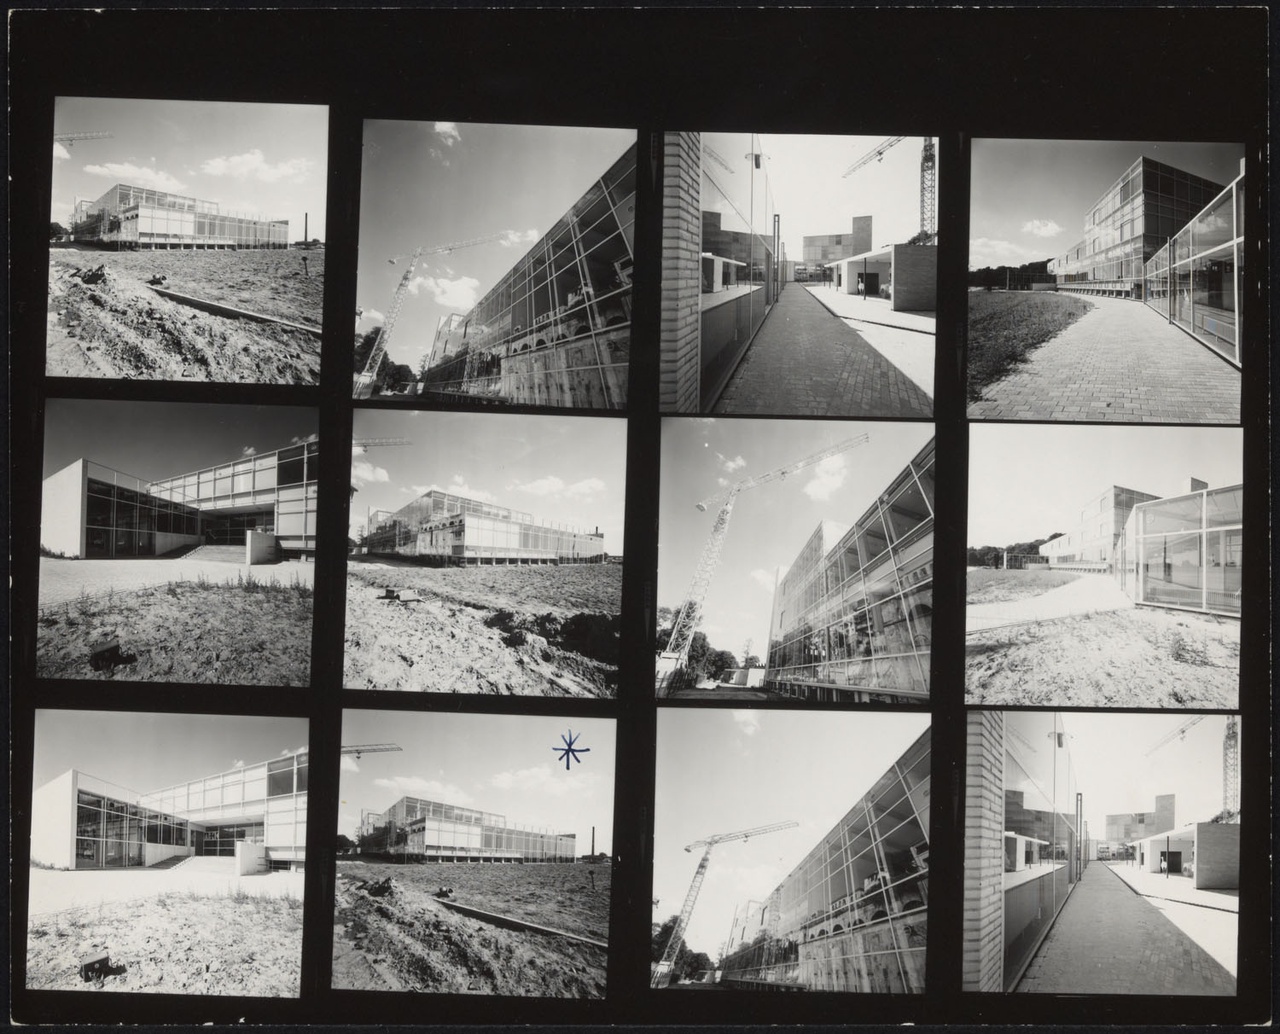 Afbeelding van Kunstacademie Arnhem, ca.1963, twaalf contact afdrukjes, van buitenkant in afbouw